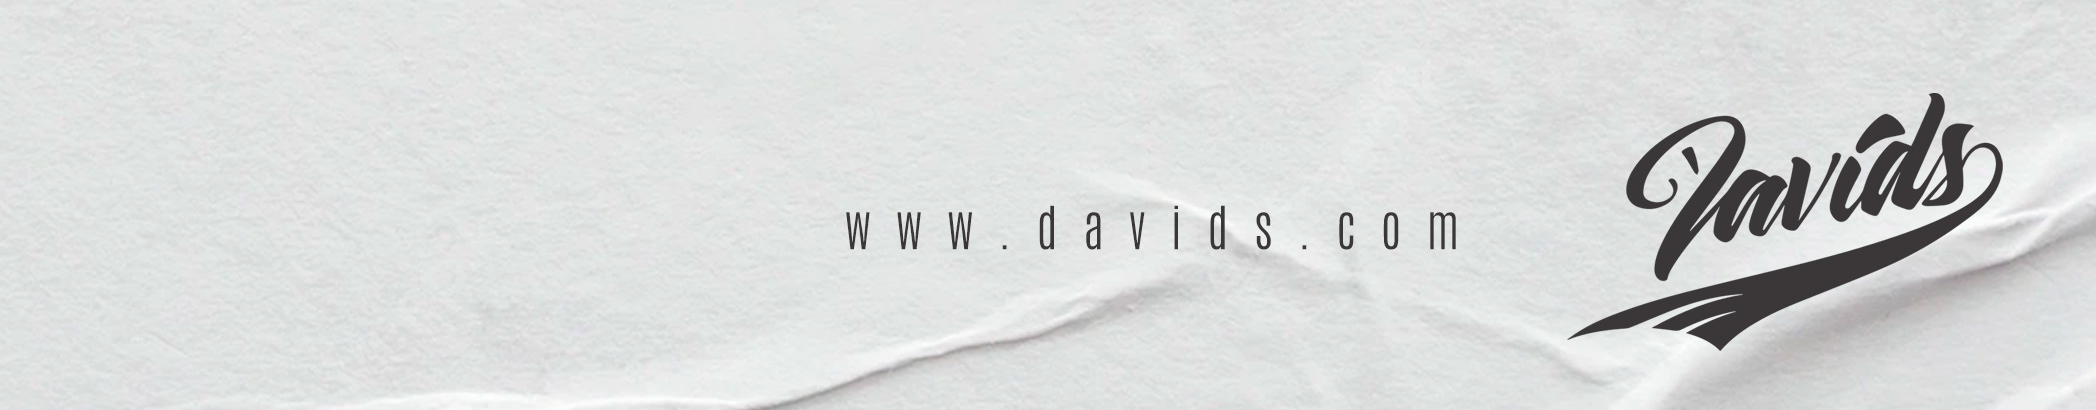 Davids Rivera's profile banner